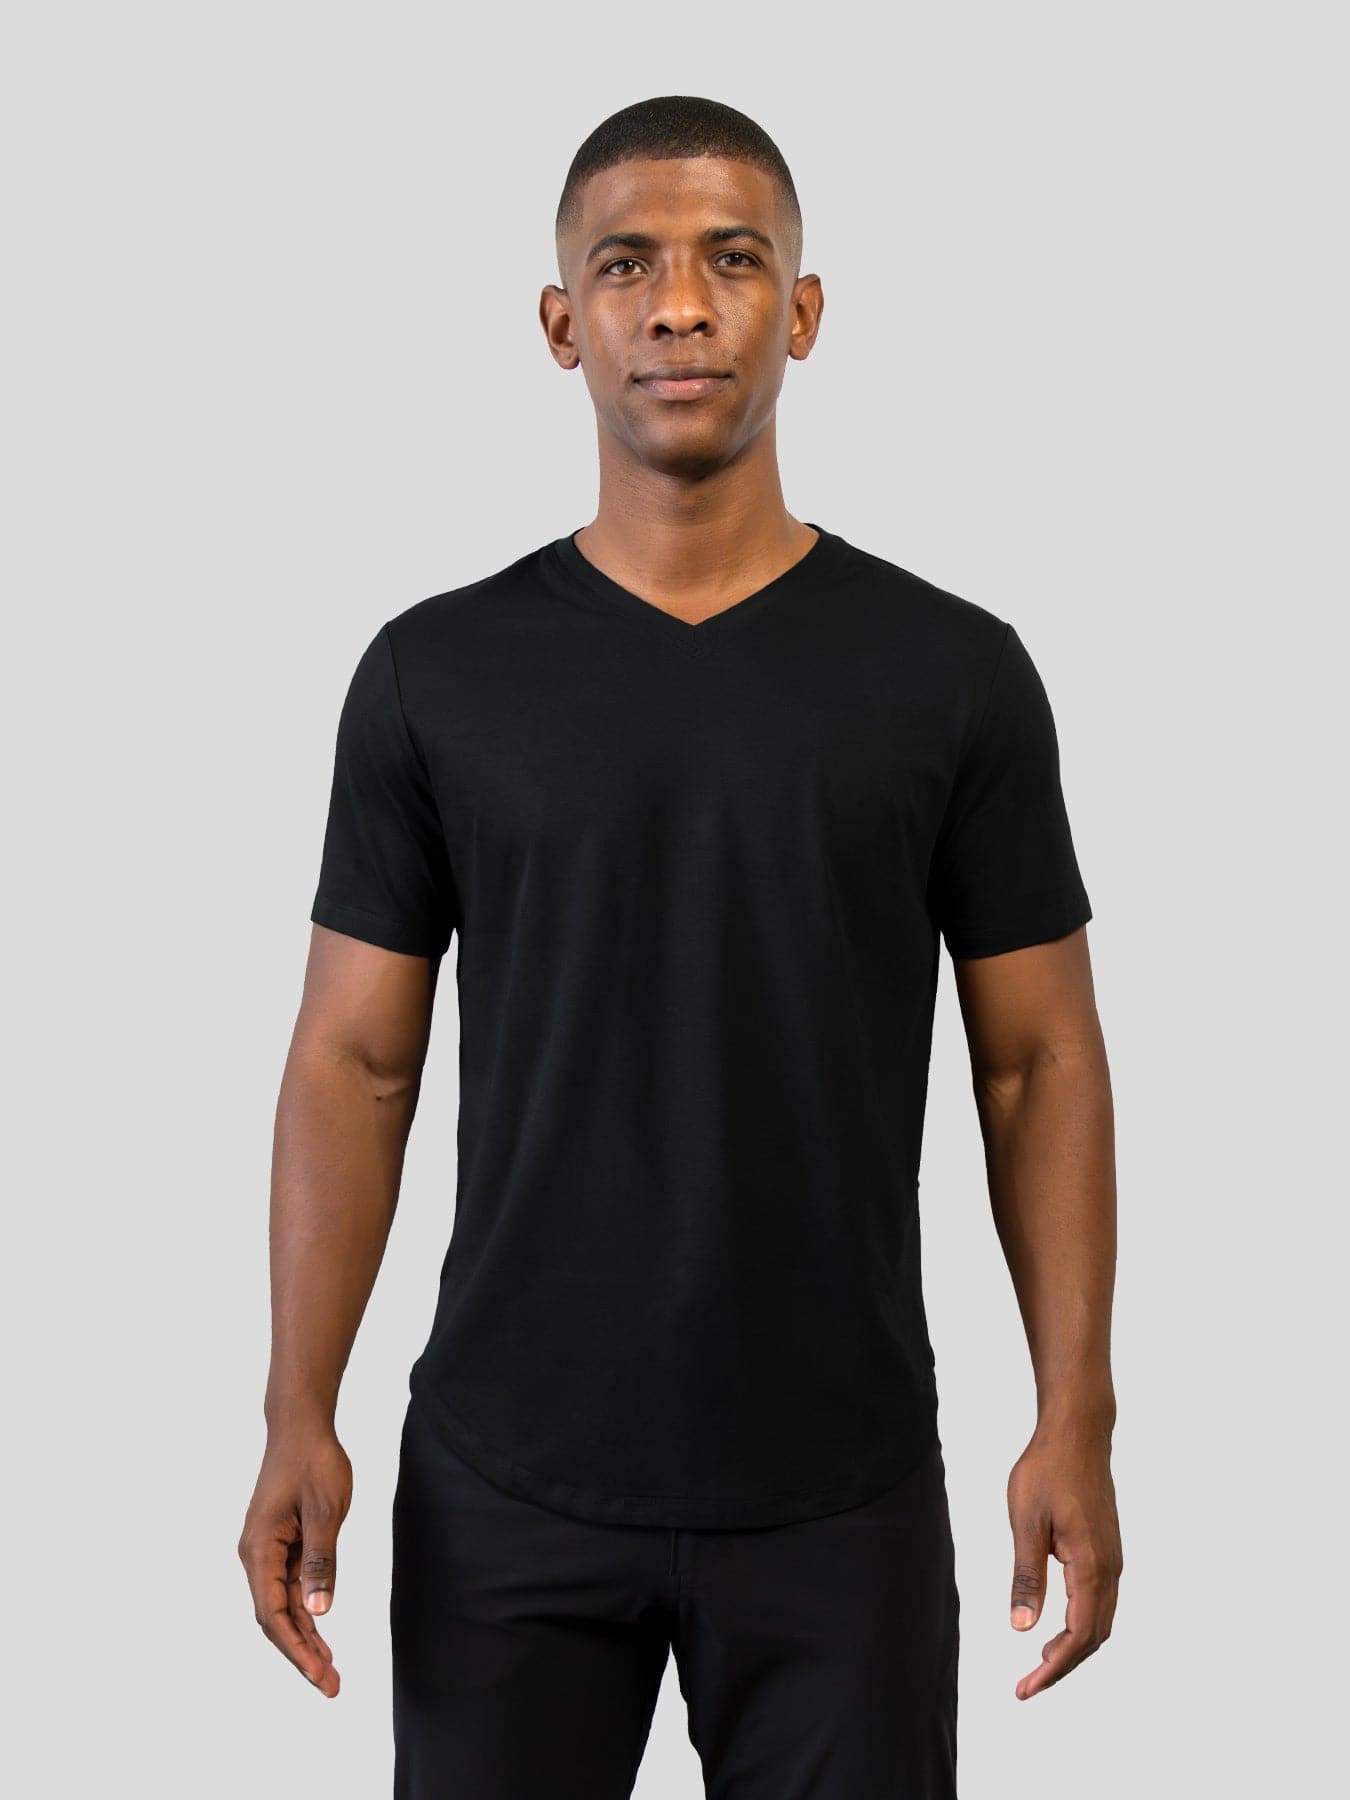 Fioboc Men's Premium Moisture Wicking Shirts Plain V-neck